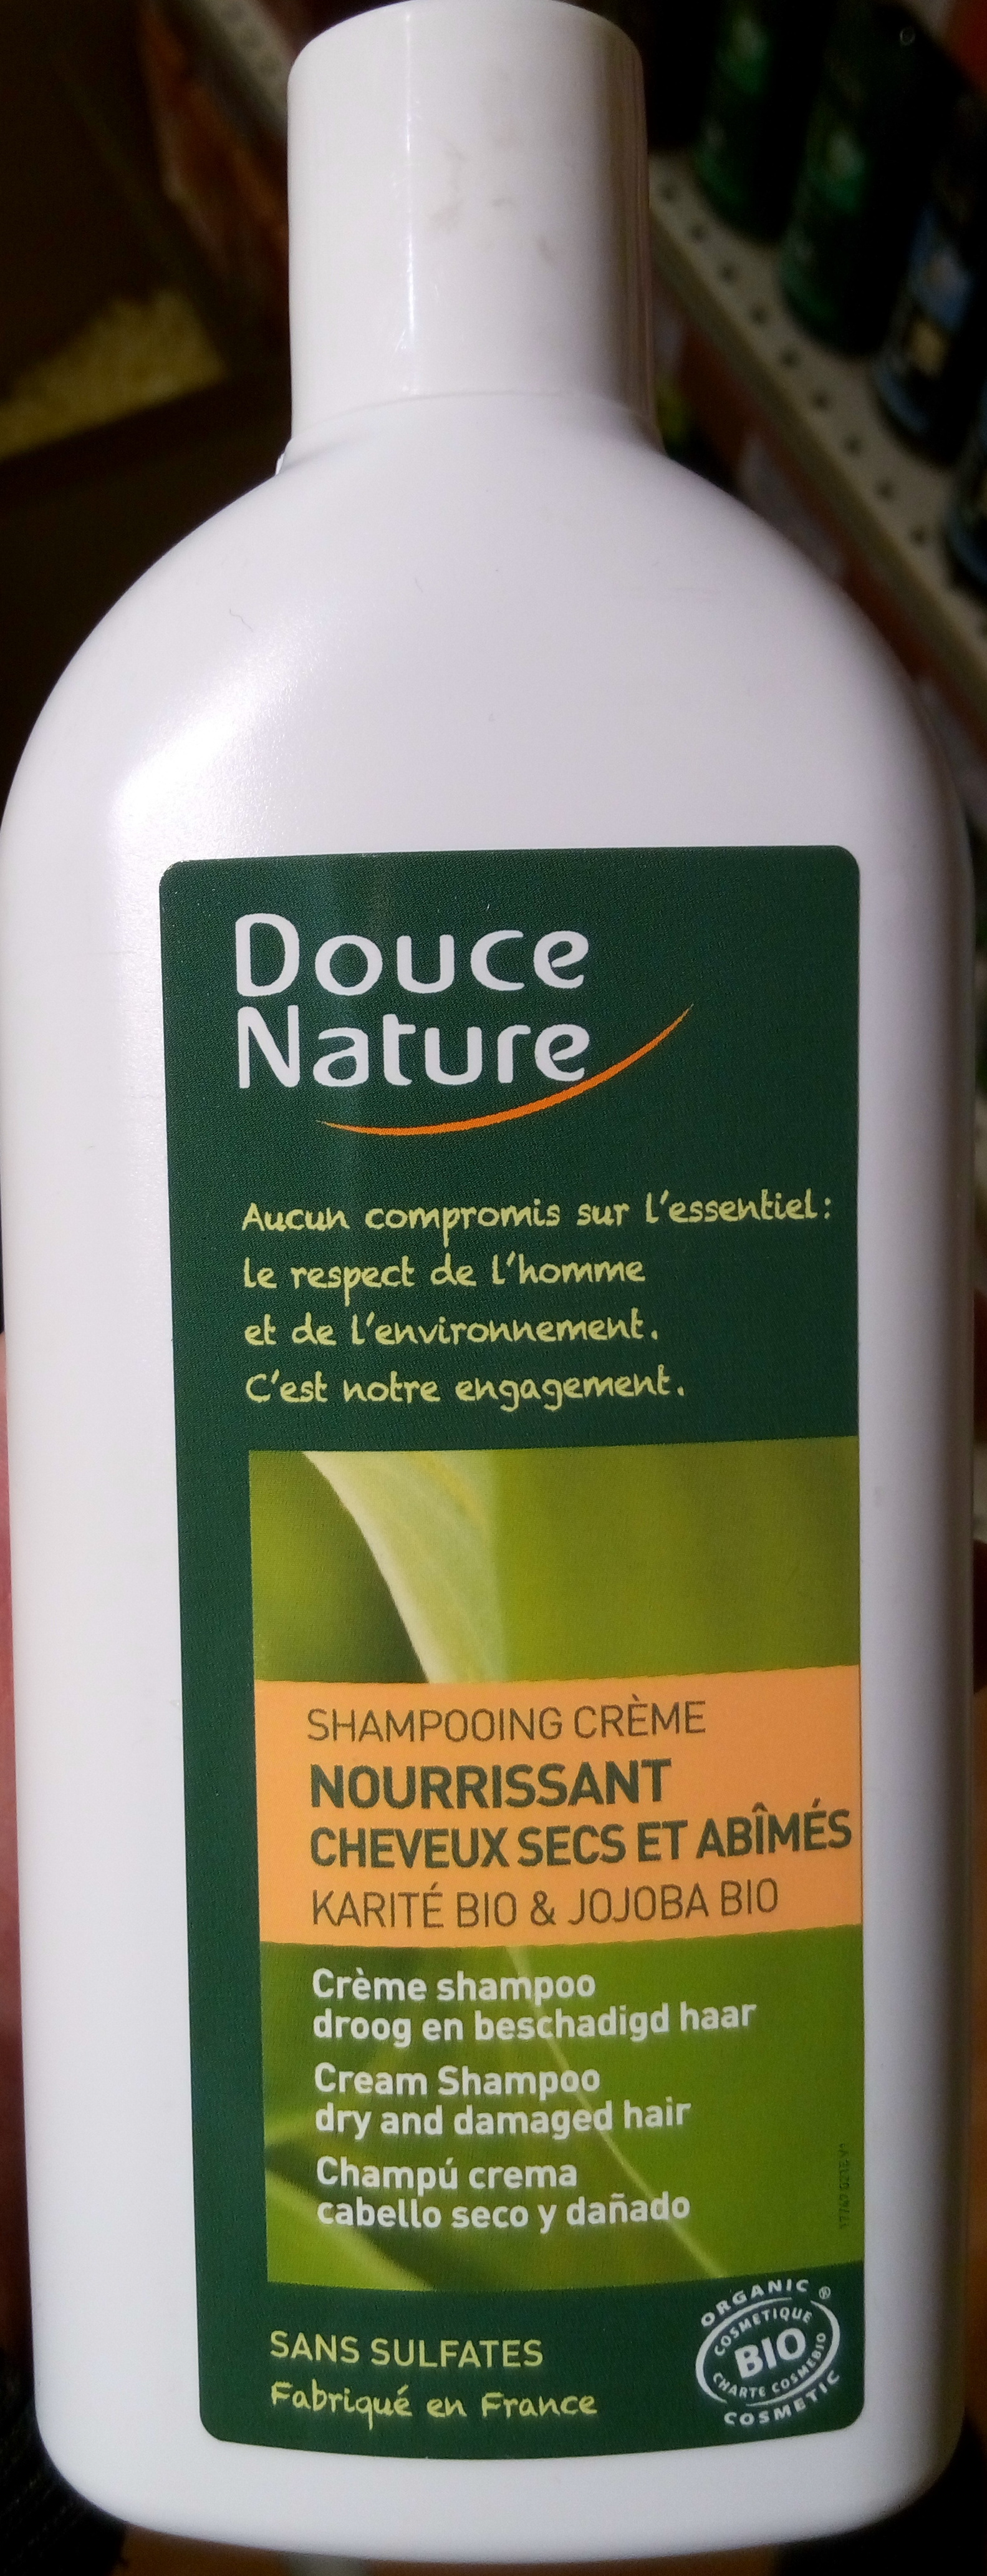 Shampooing crème nourrissant cheveux secs et abîmées au karité bio & jojoba bio - Produto - fr